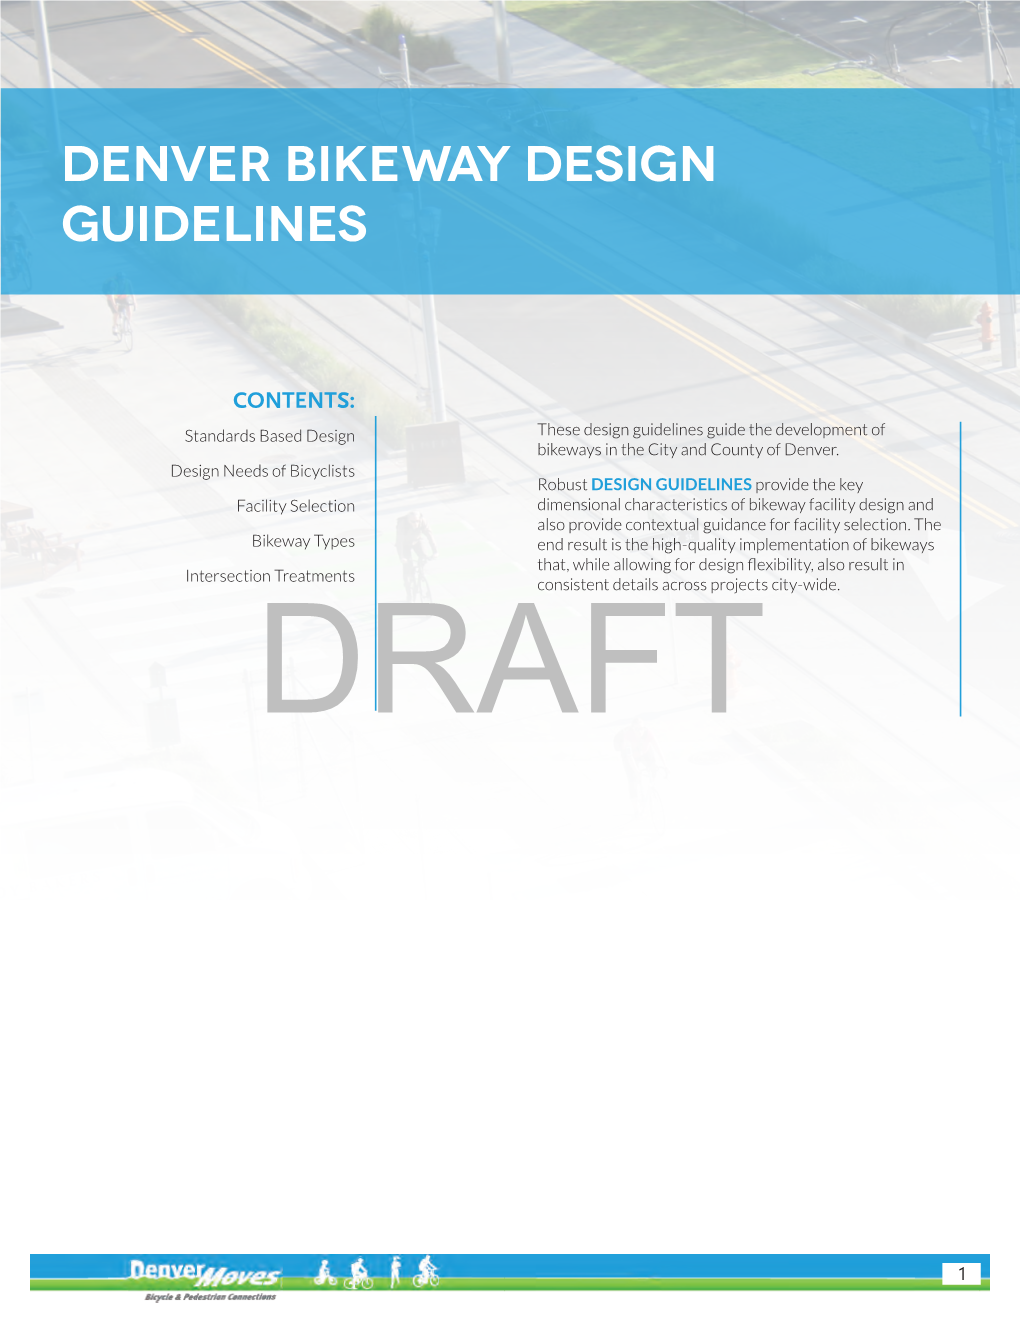 Denver Bikeway Design Guidelines (DRAFT)